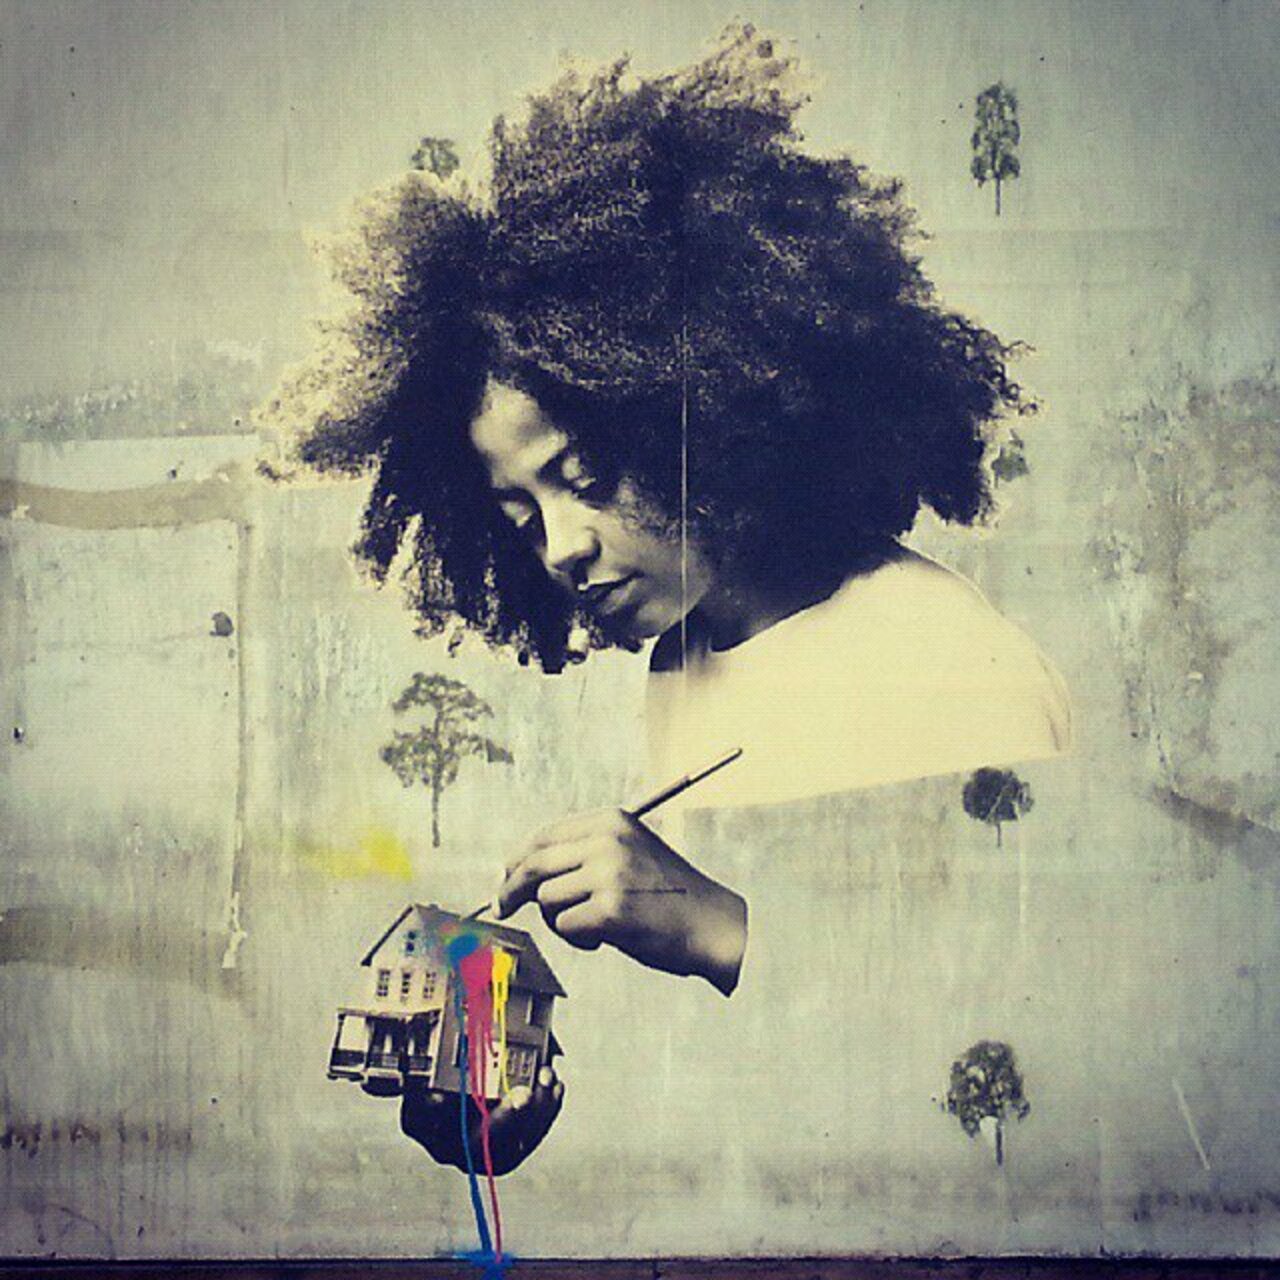 Shape your Soul          •         #streetart #graffiti #afro #soulpower #art  . : https://t.co/jZ7PodG73B